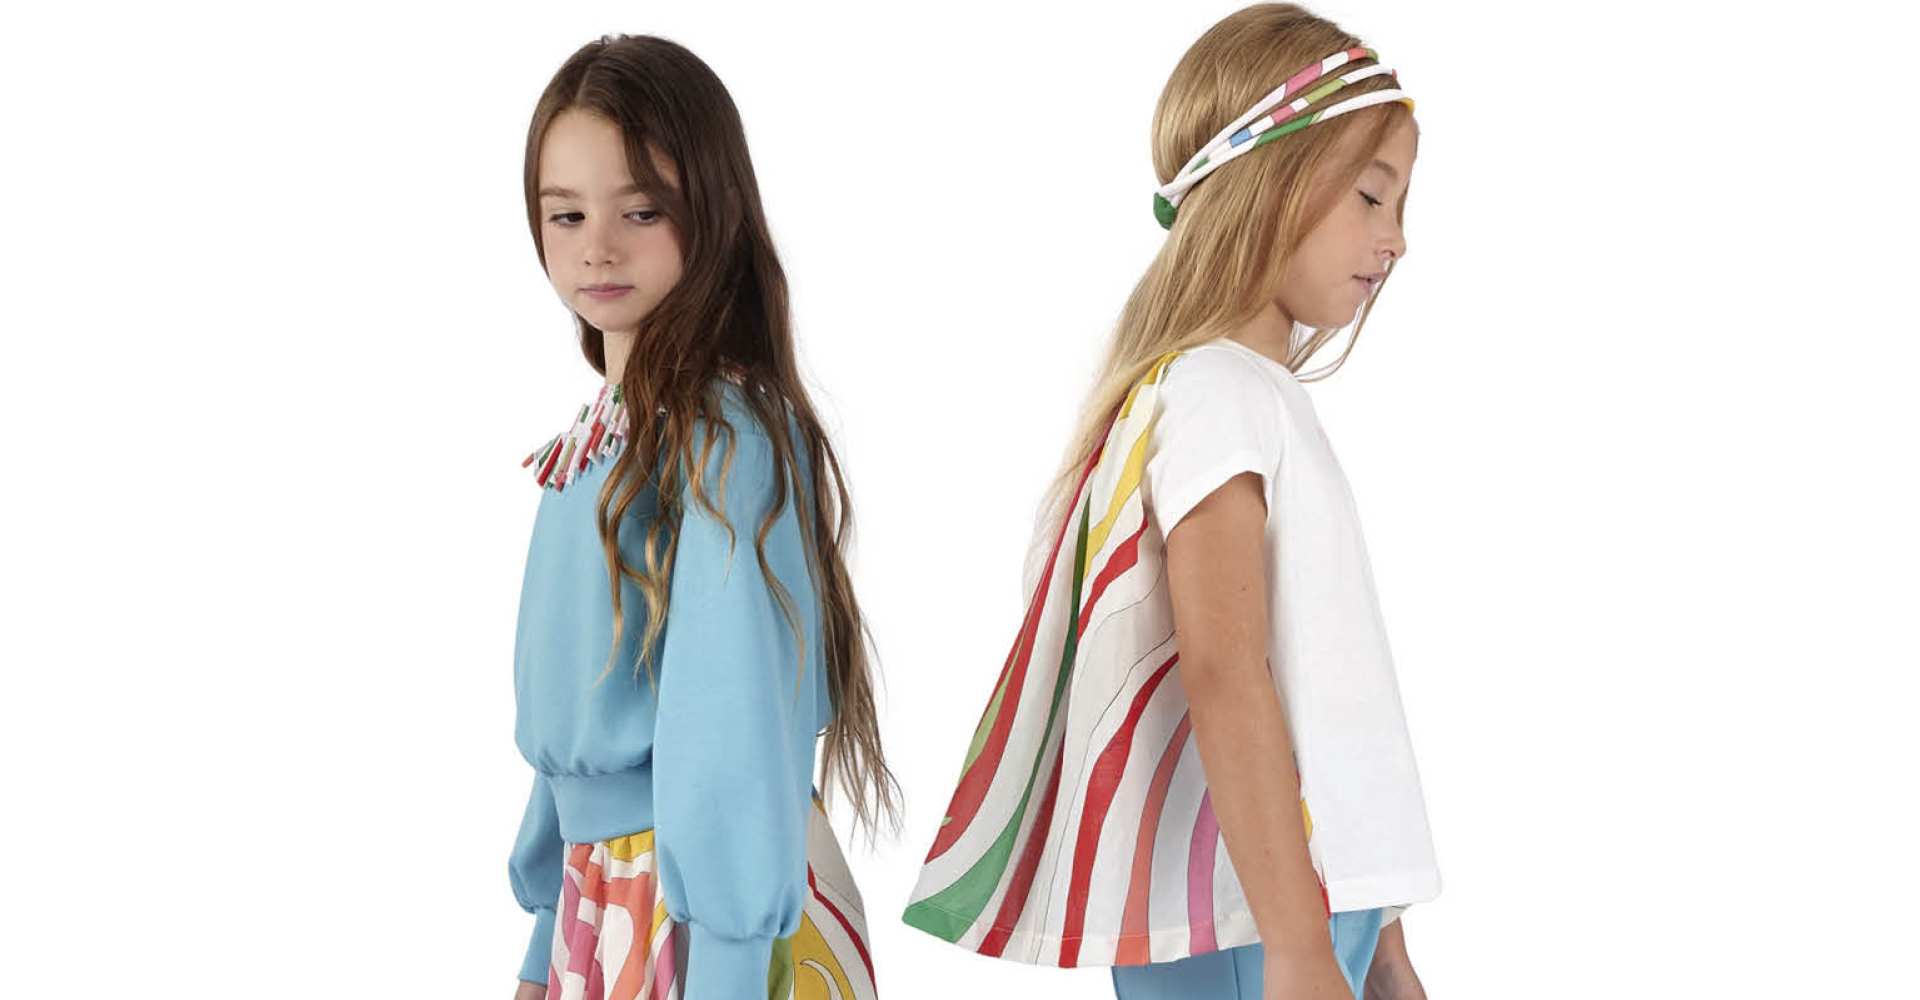 EMILIO PUCCI JUNIOR - Children's clothing - Simonetta Group